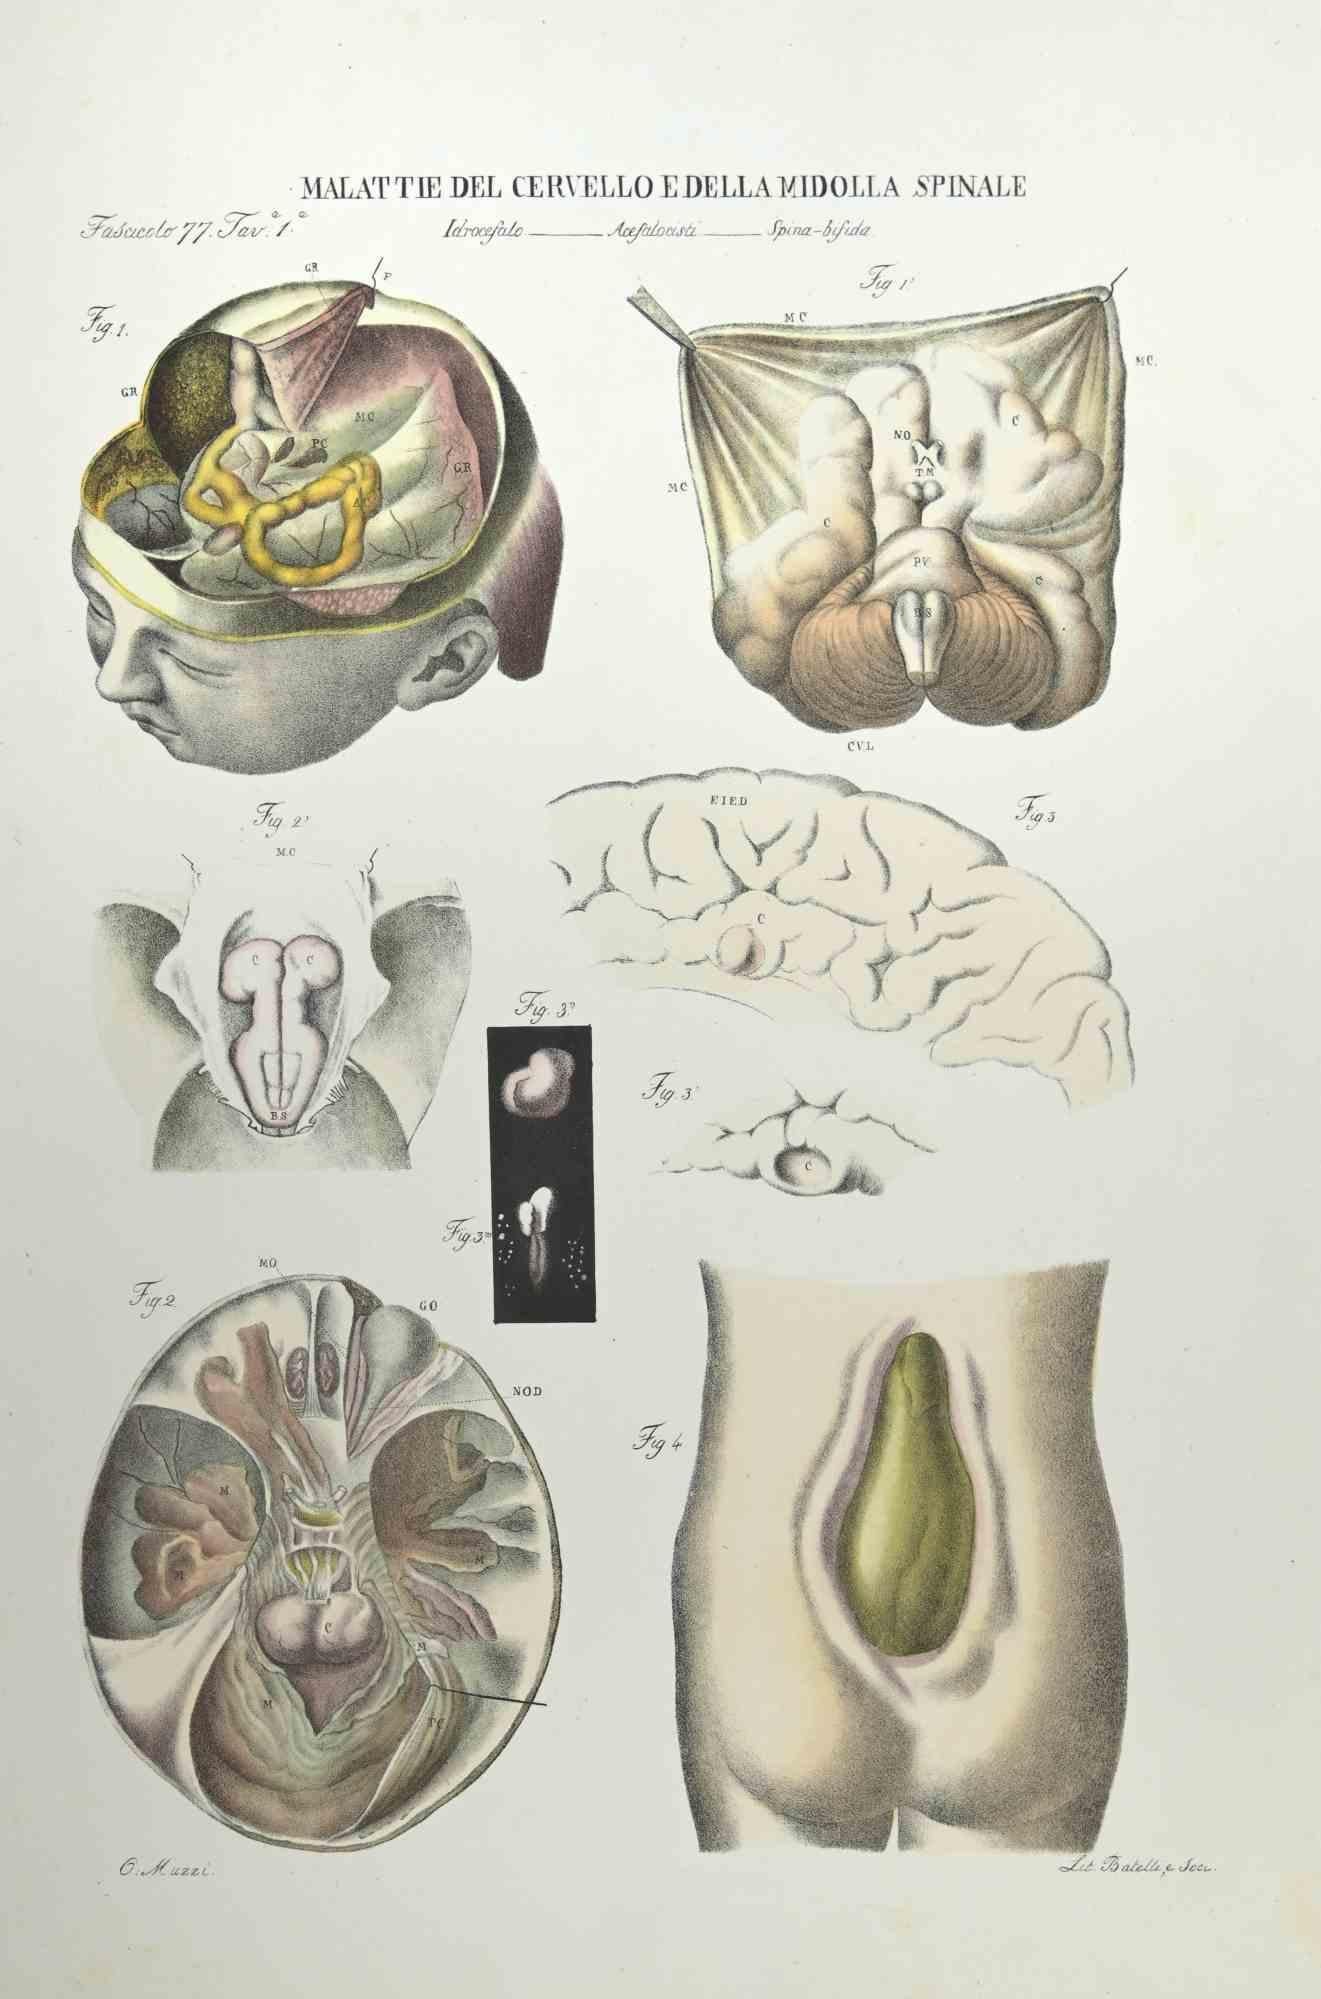 Maladies du cerveau et de la Corde épinière  est une lithographie coloriée à la main par Ottavio Muzzi pour l'édition d'Antoine Chazal, Anatomie humaine, Imprimeurs Batelli et Ridolfi, réalisée en 1843.

Signé sur la plaque dans la marge inférieure